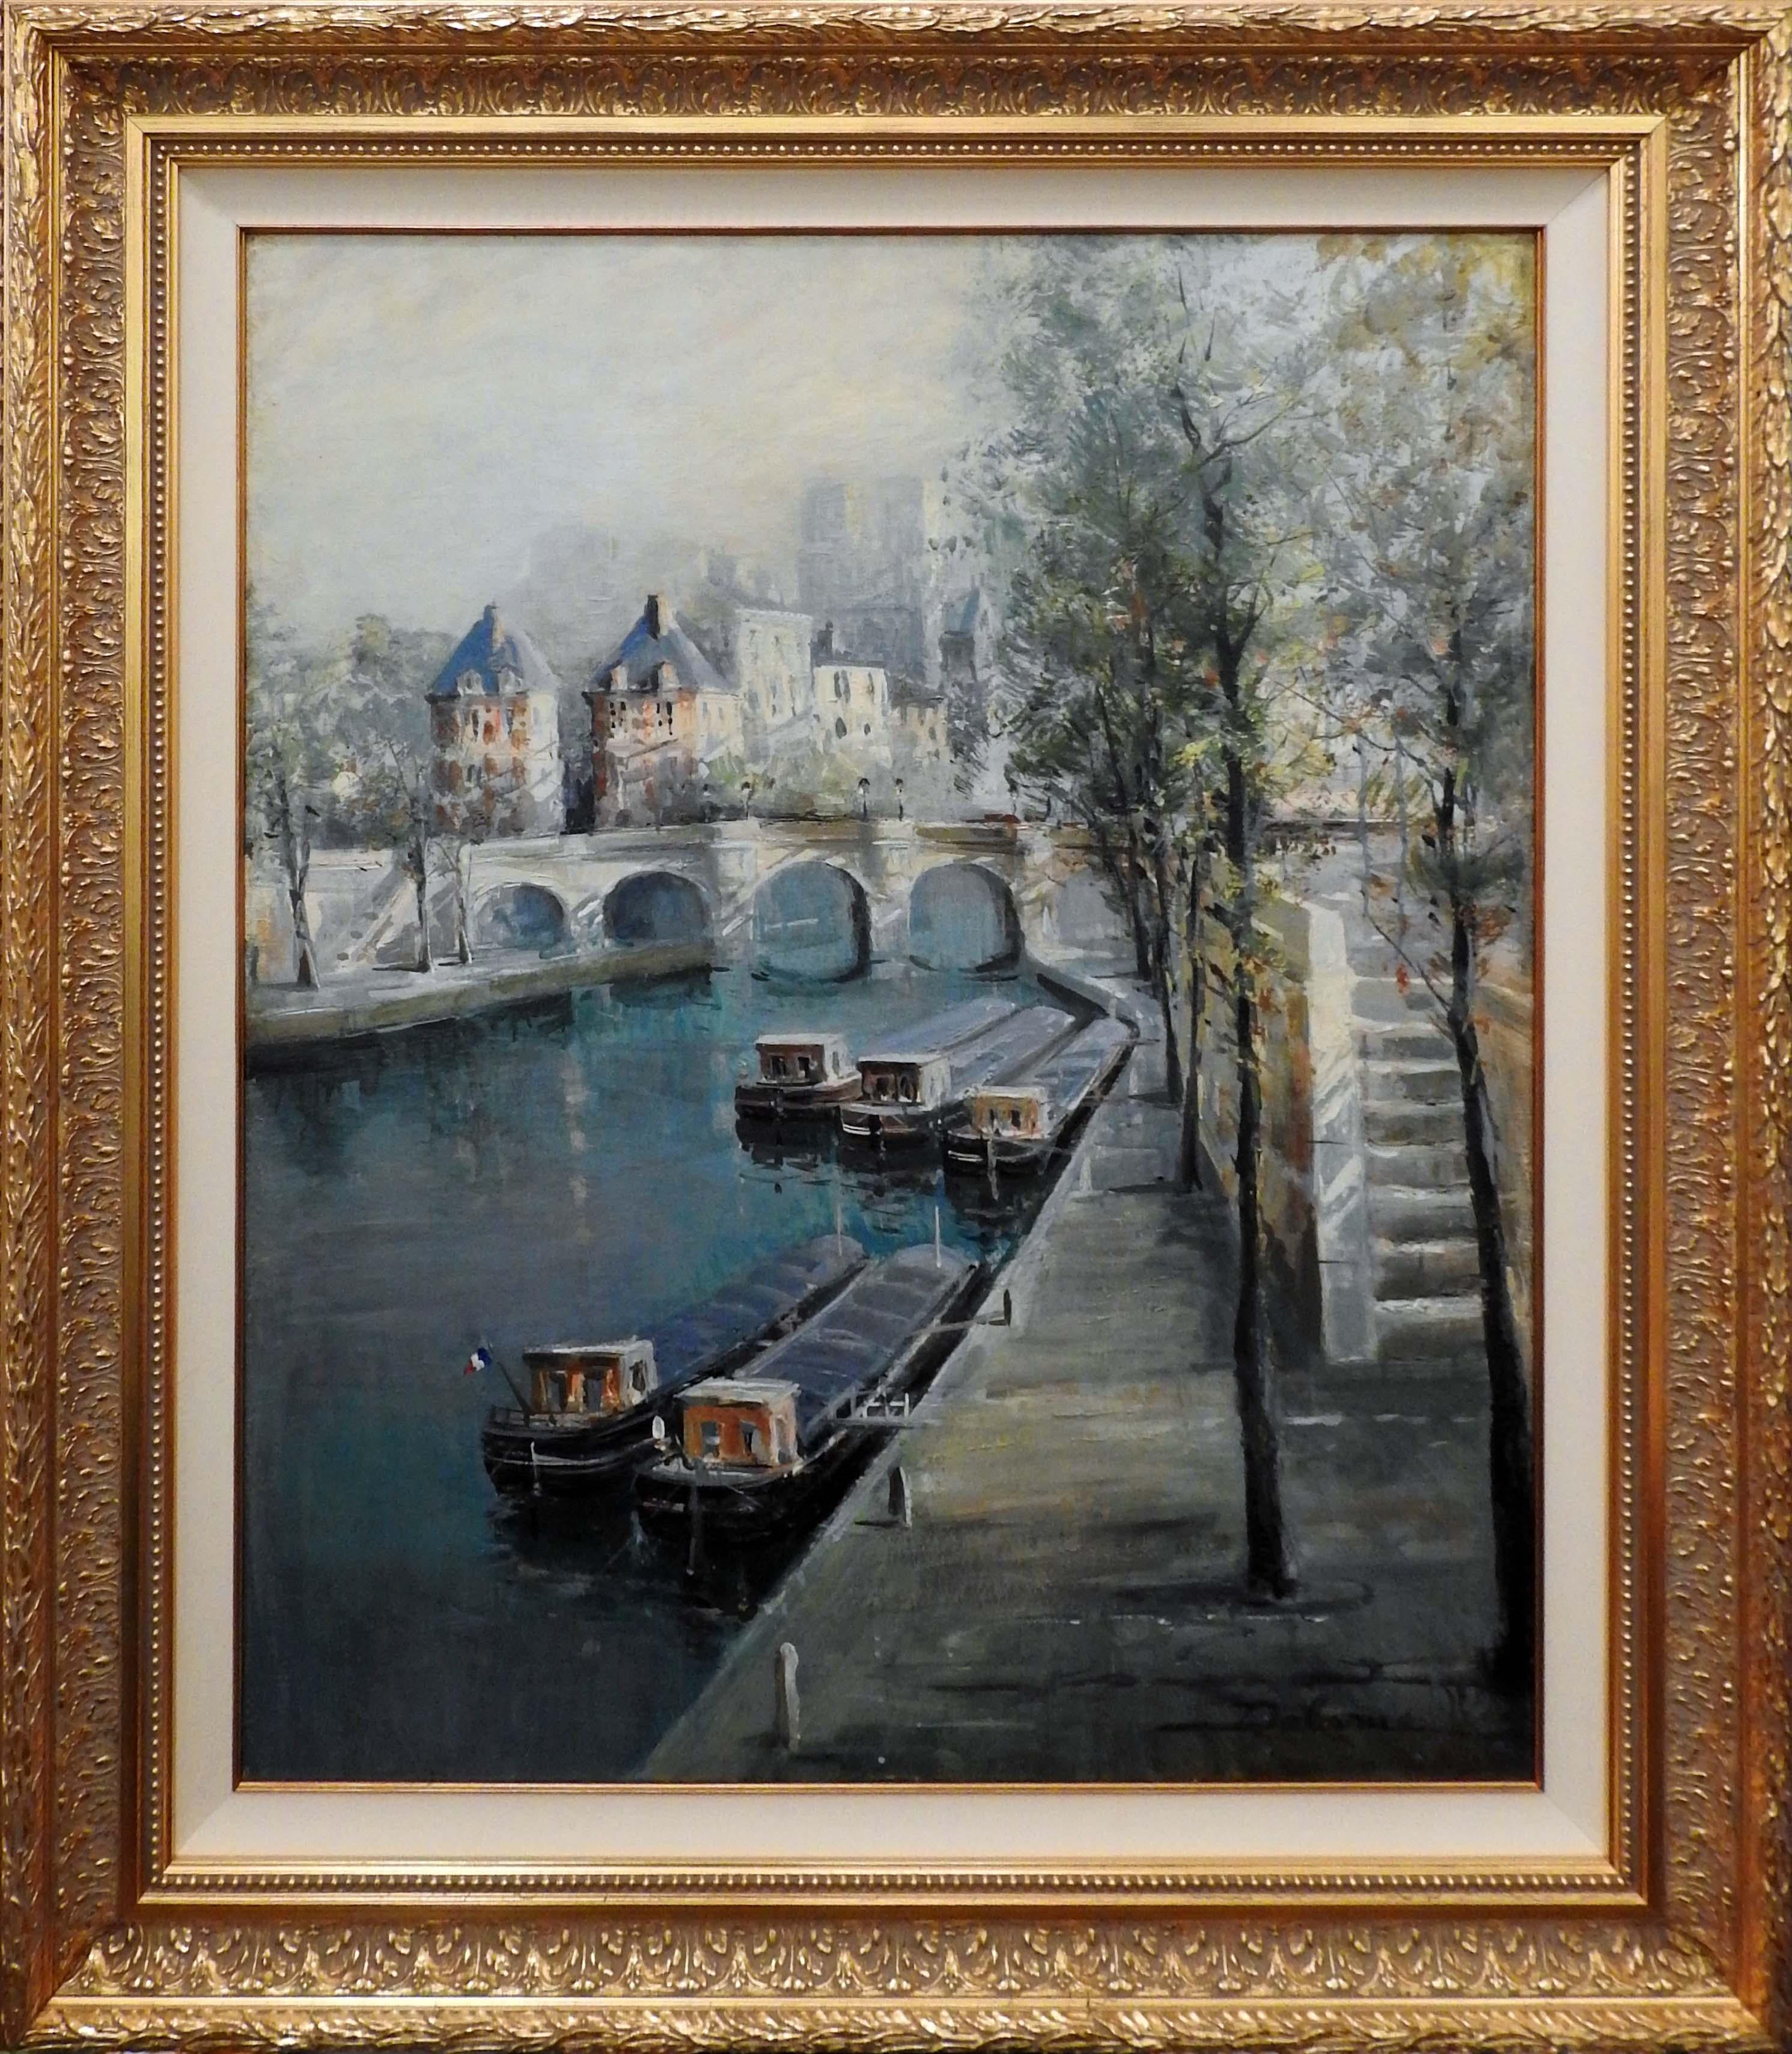 Lucien Delarue est connu dans le monde entier comme un artiste qui capture fidèlement l'ambiance romantique de Paris. Son célèbre sujet des "péniches sur le quai", ainsi que d'autres scènes parisiennes, complètent ses représentations romantiques du